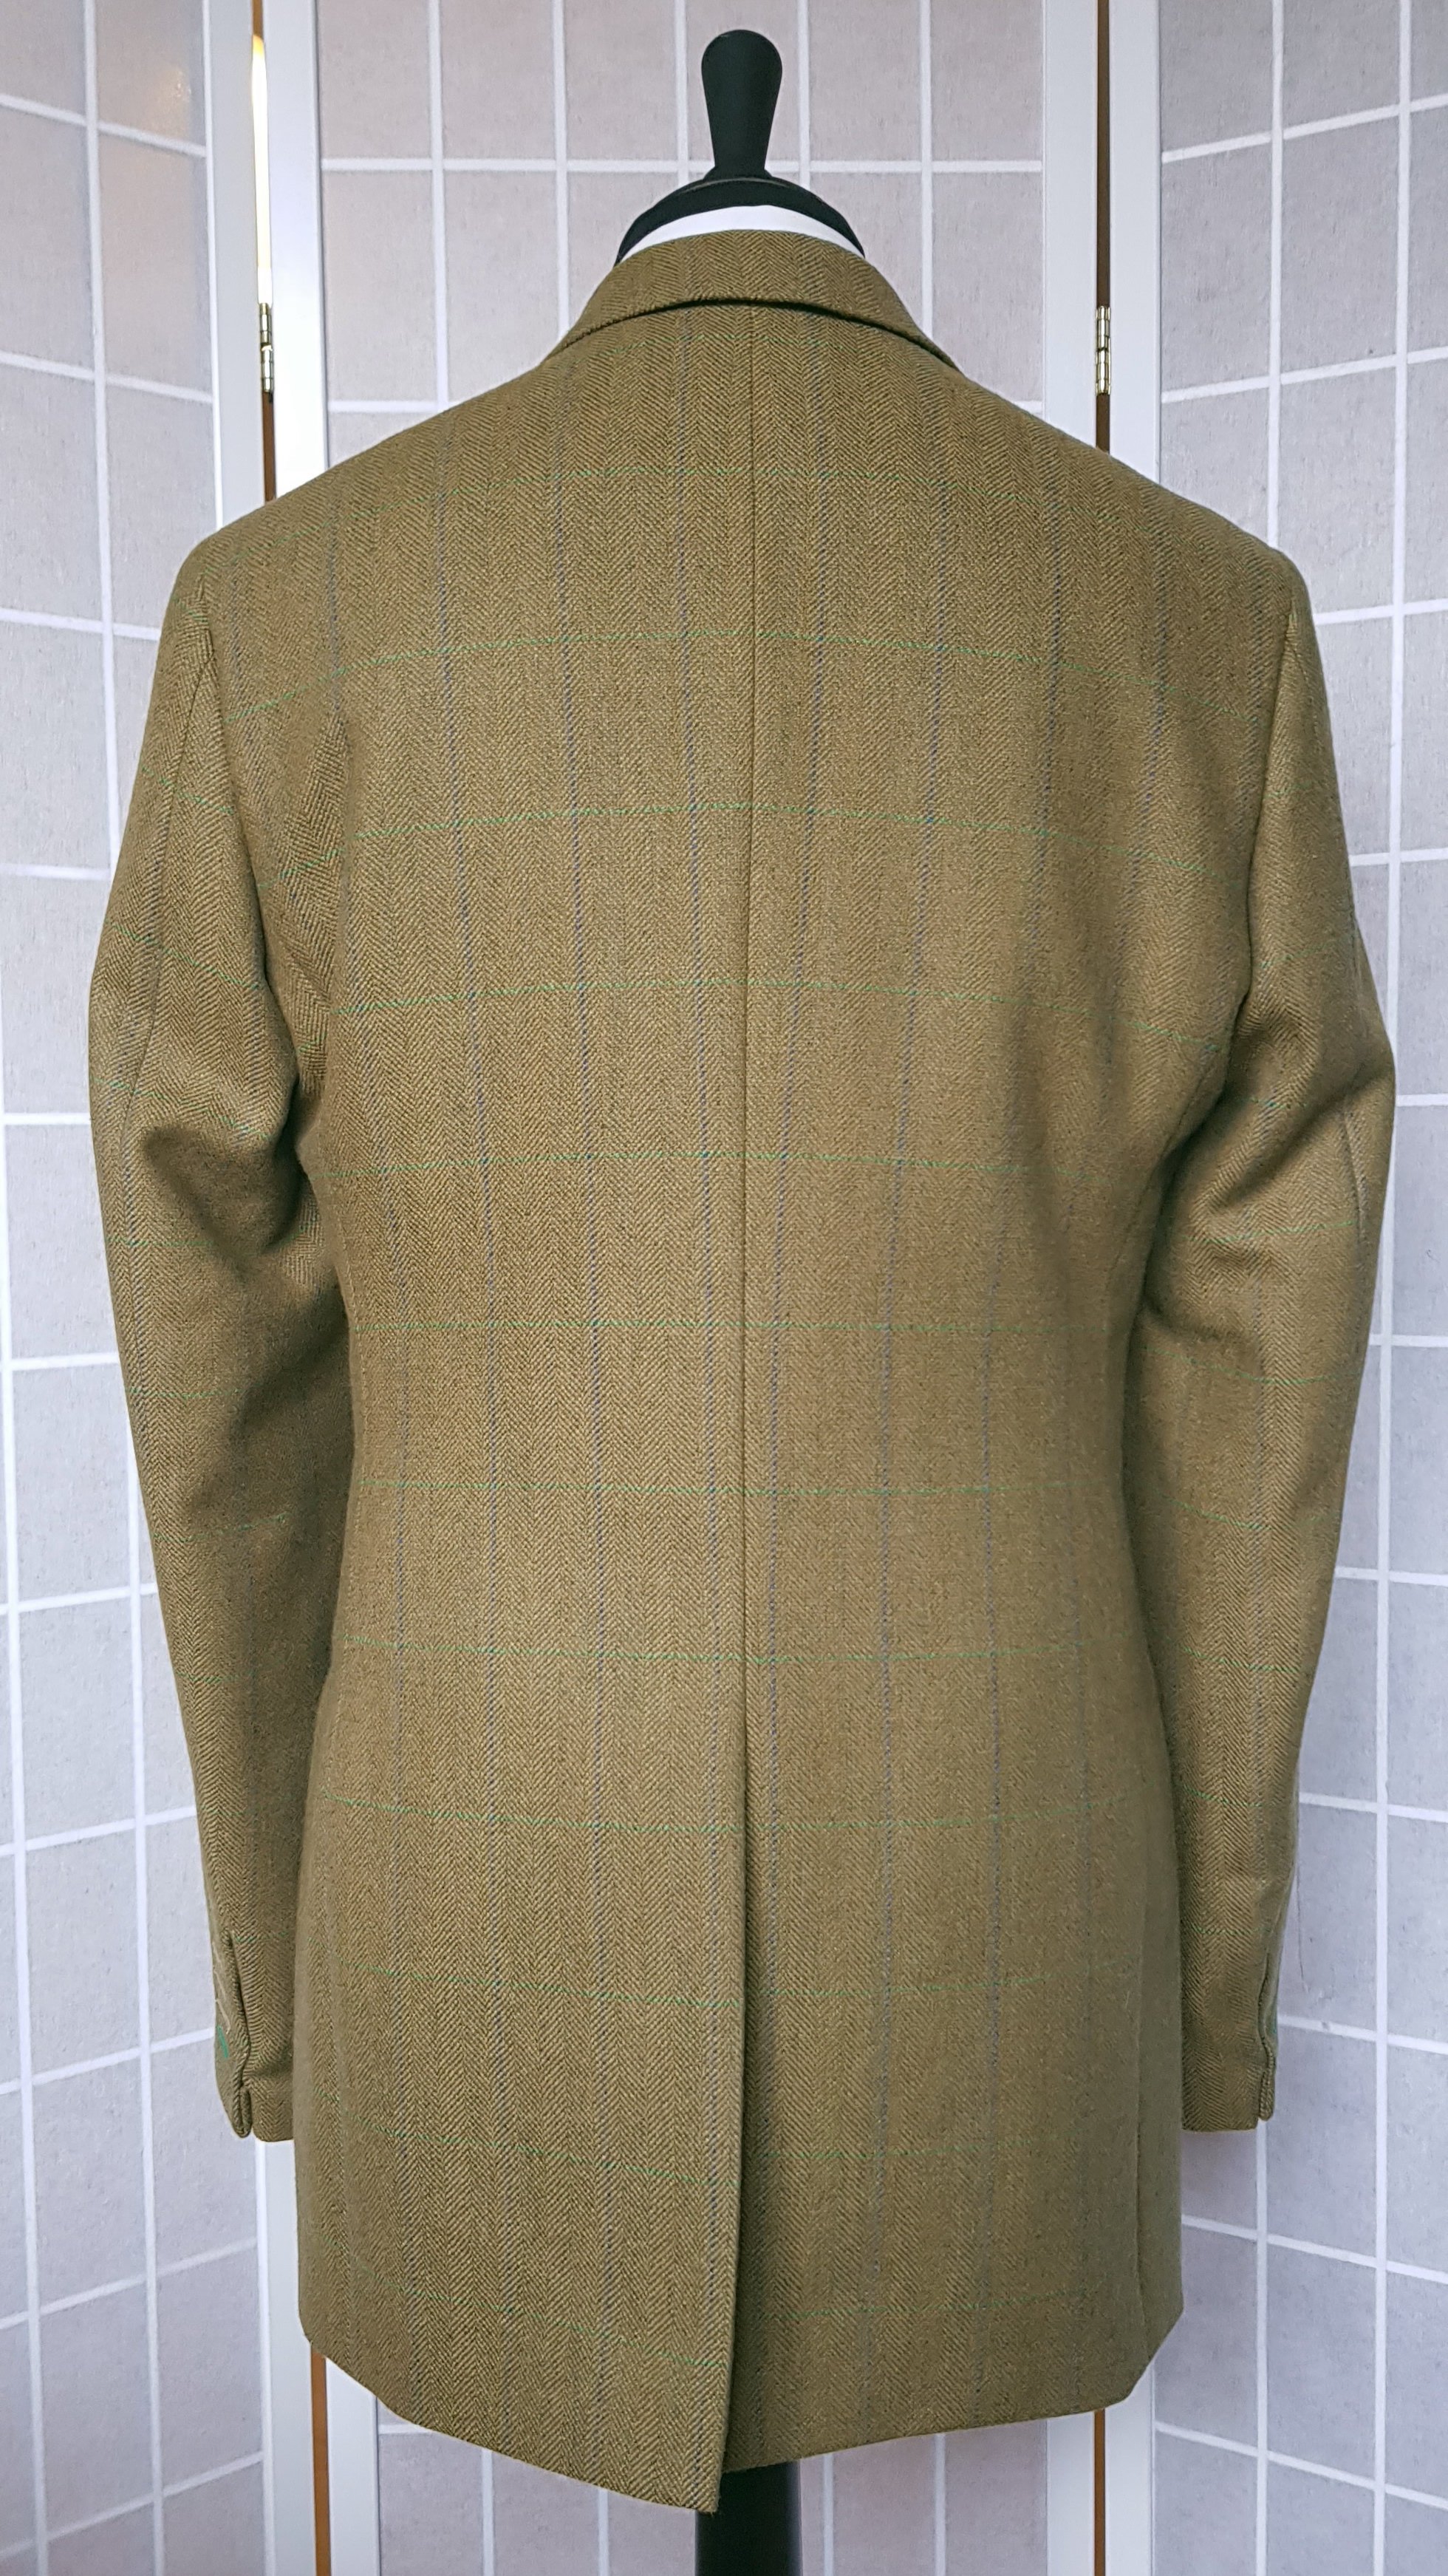 3 Piece suit in Glenroyal Tweed (8).jpg